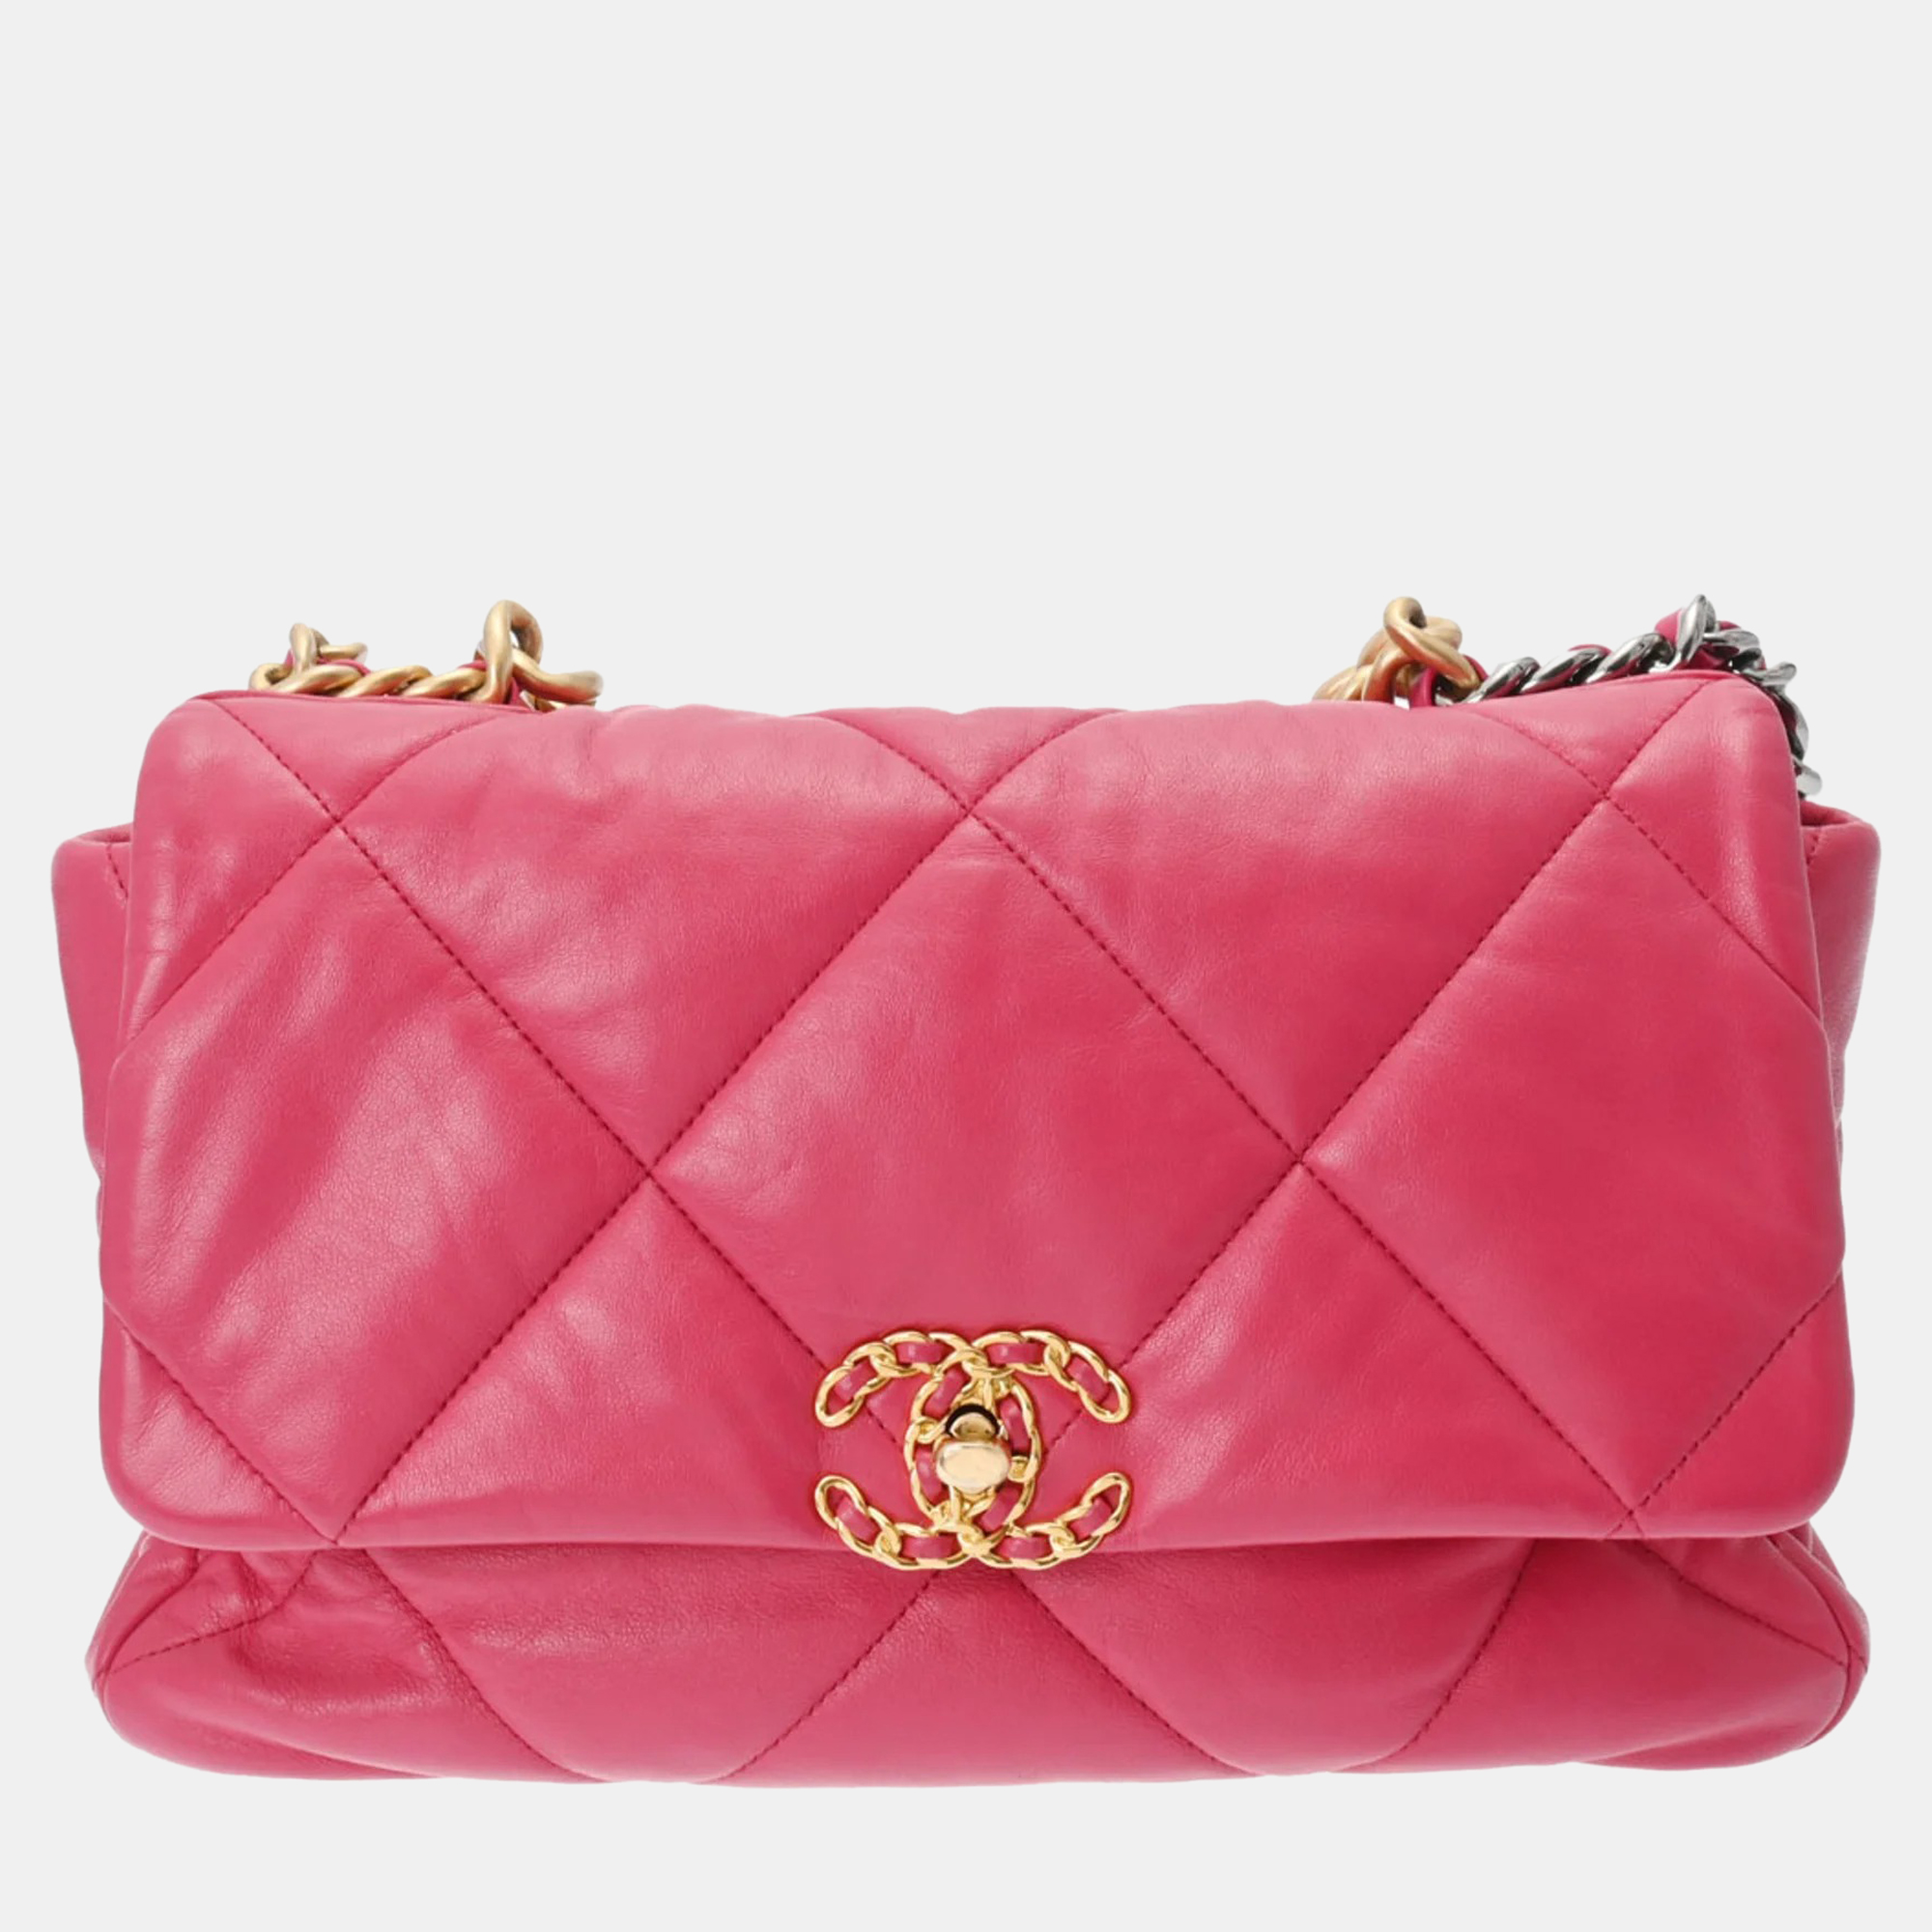 Chanel pink leather large 19 shoulder bag